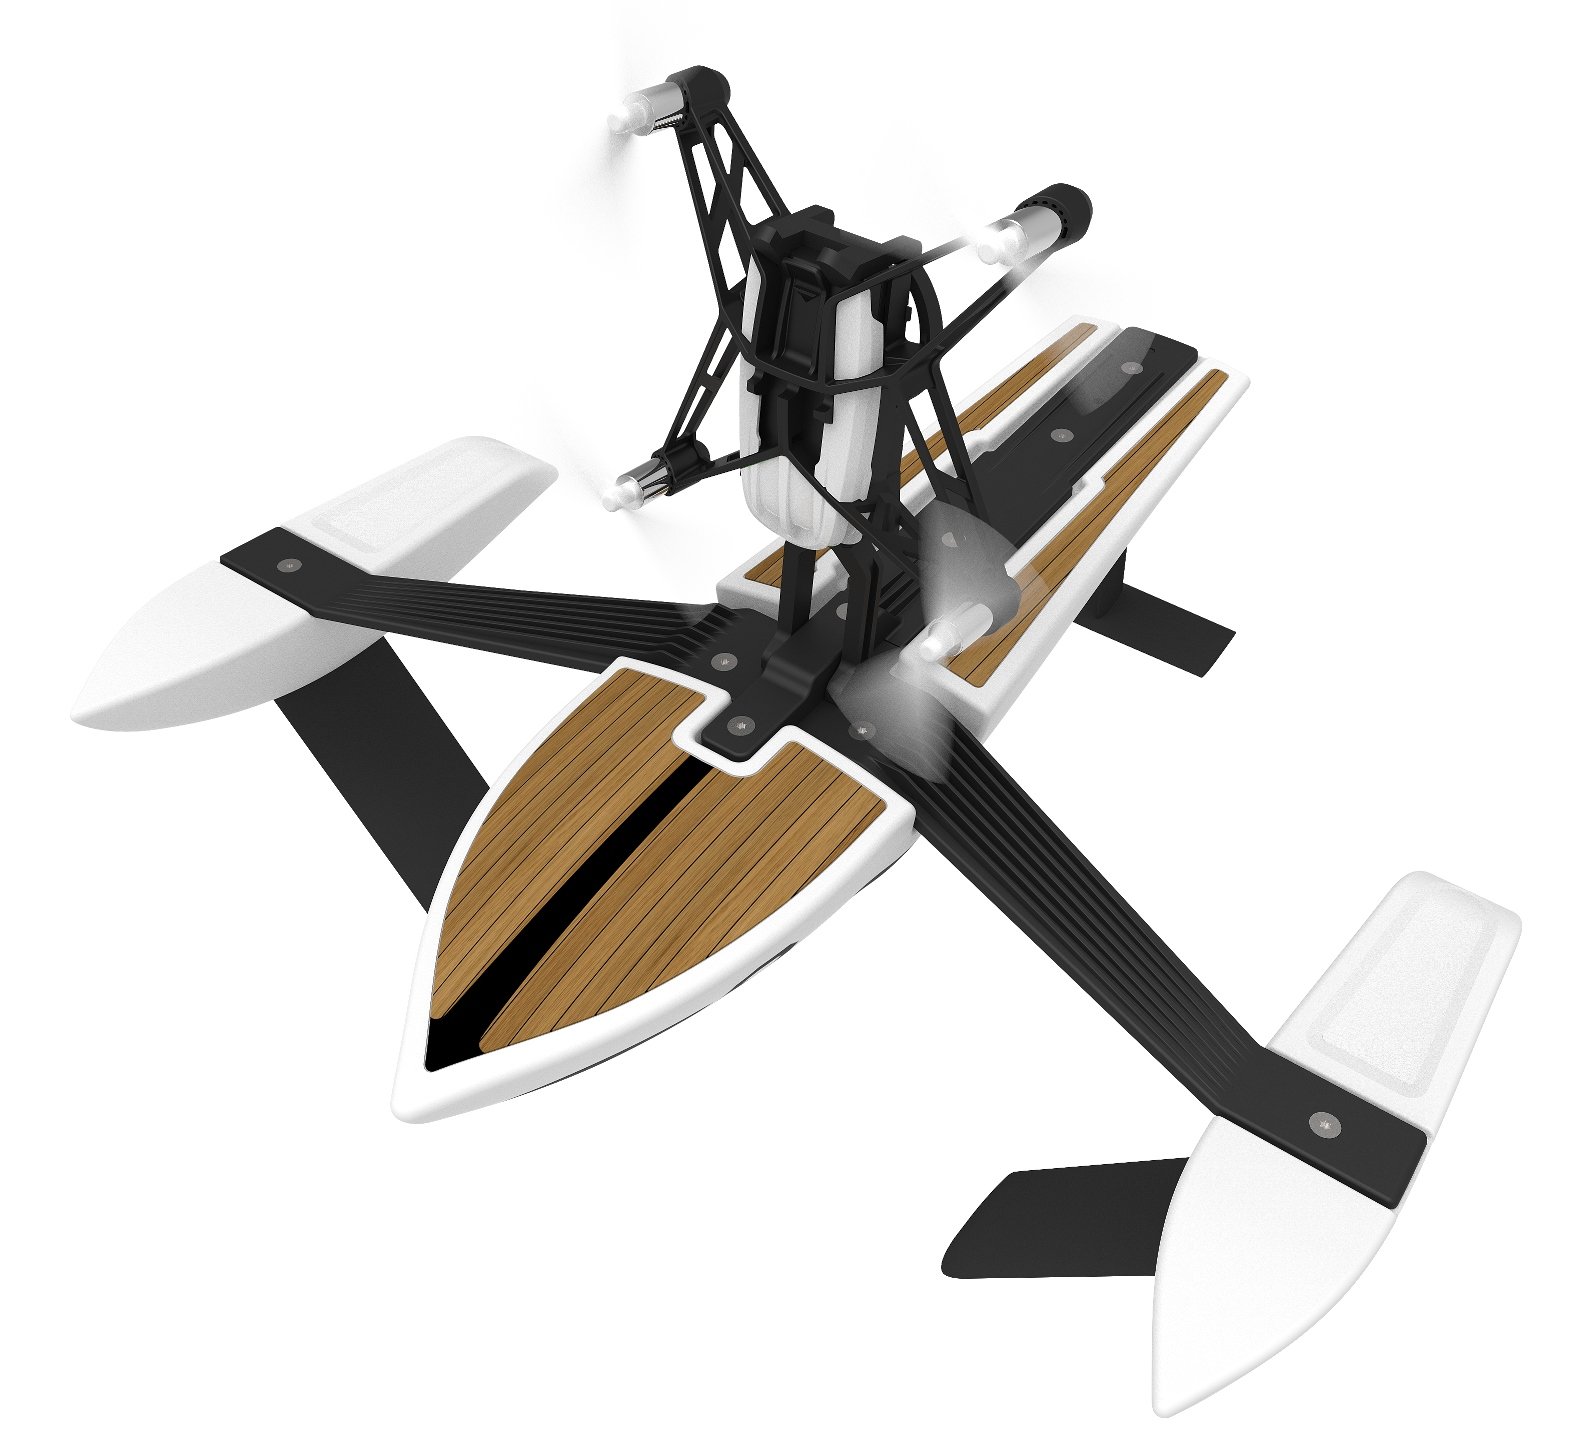 Drone Parrot Minidrone hydrofoil new z blanco agua y aire dos en uno pilotar por barco vertical 30 fps 18 kmh 9 minutos de vuelo 20 metros alcance programable color